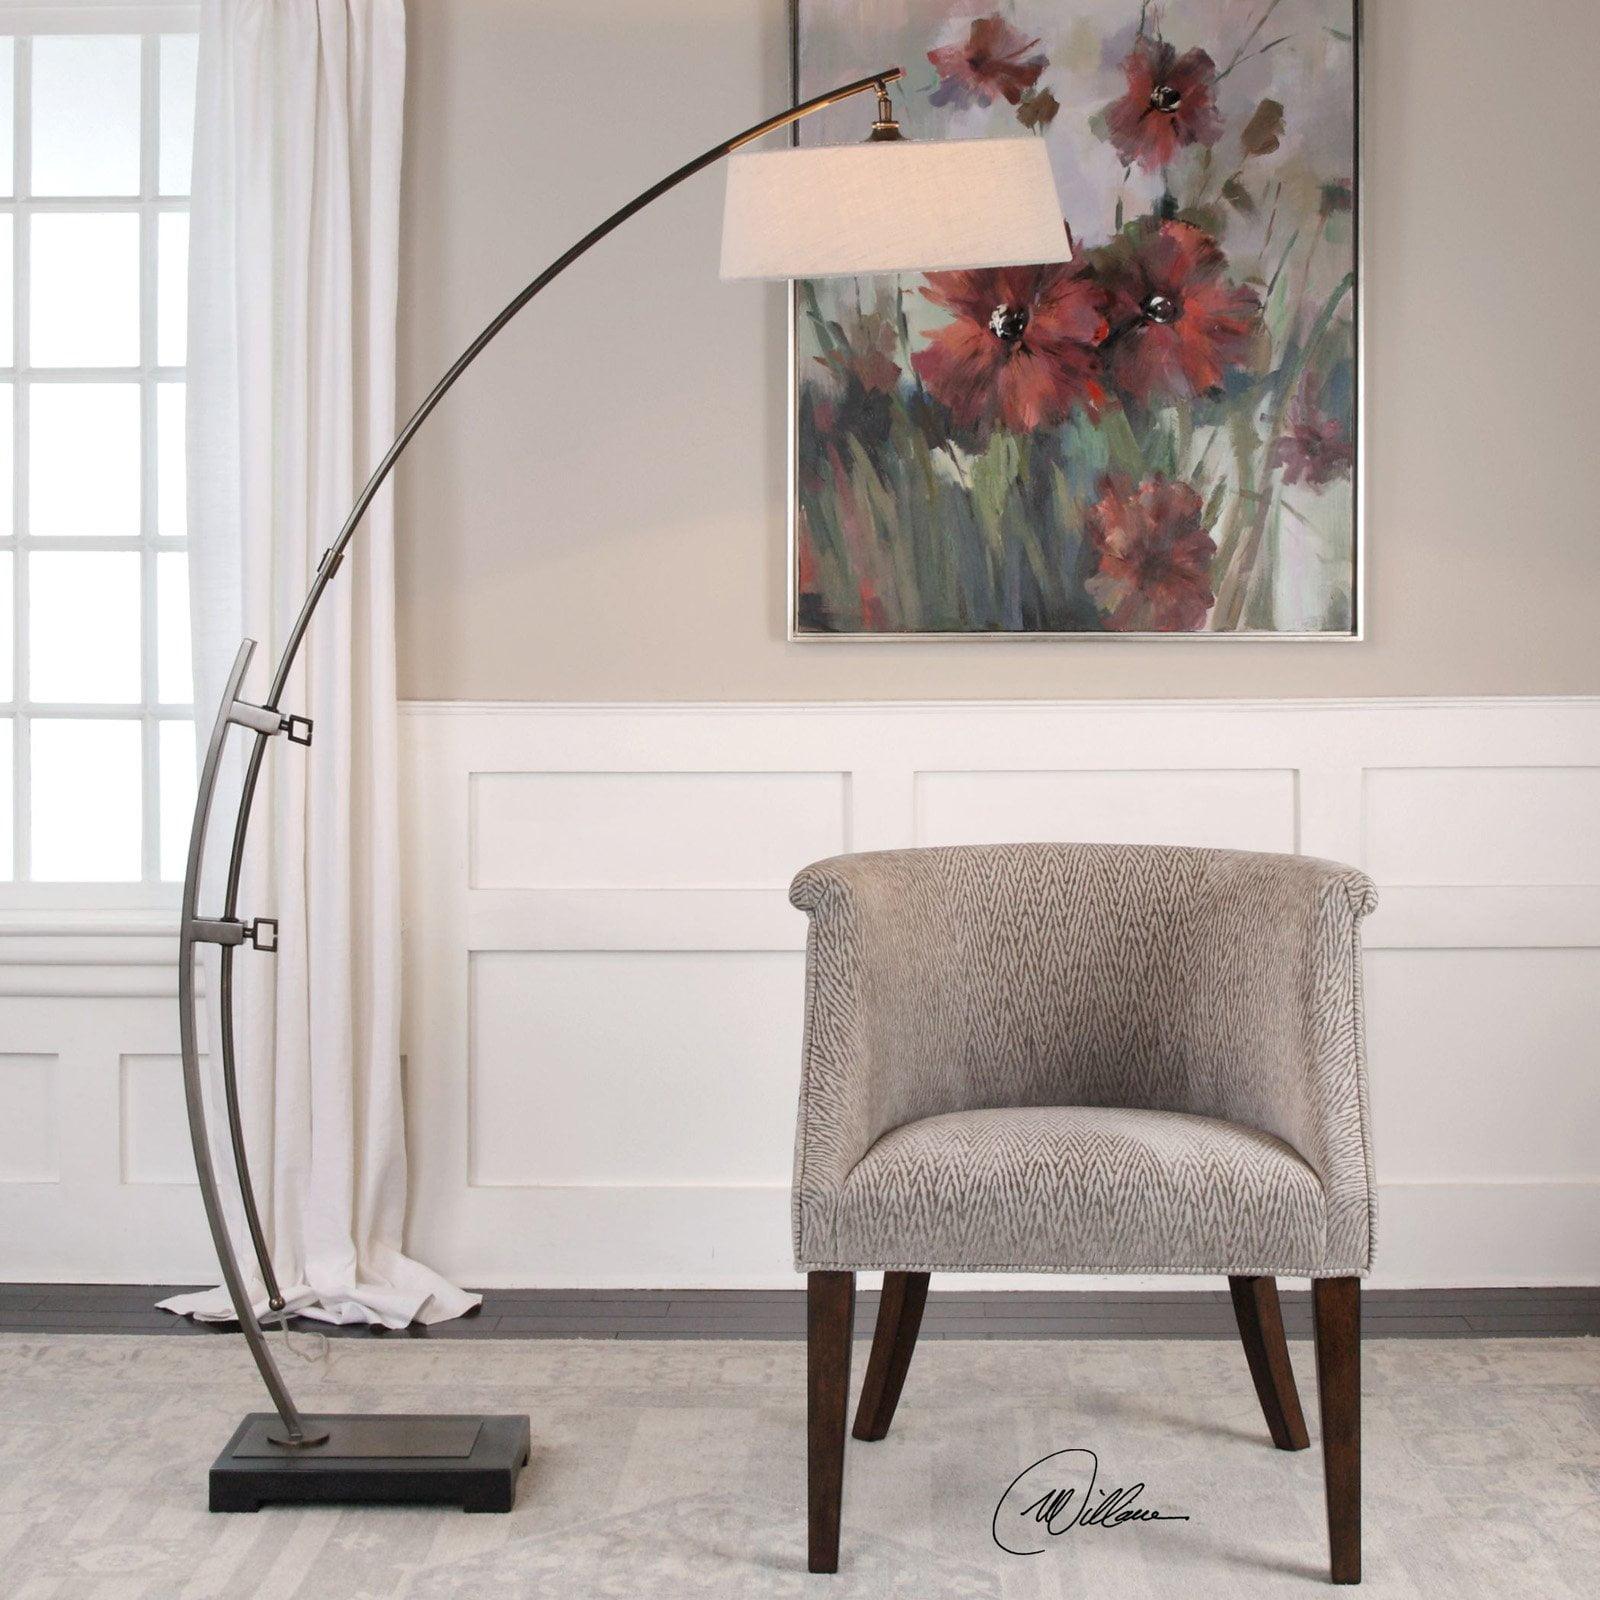 Calogero Dark Bronze Adjustable Arc Floor Lamp with Beige Linen Shade